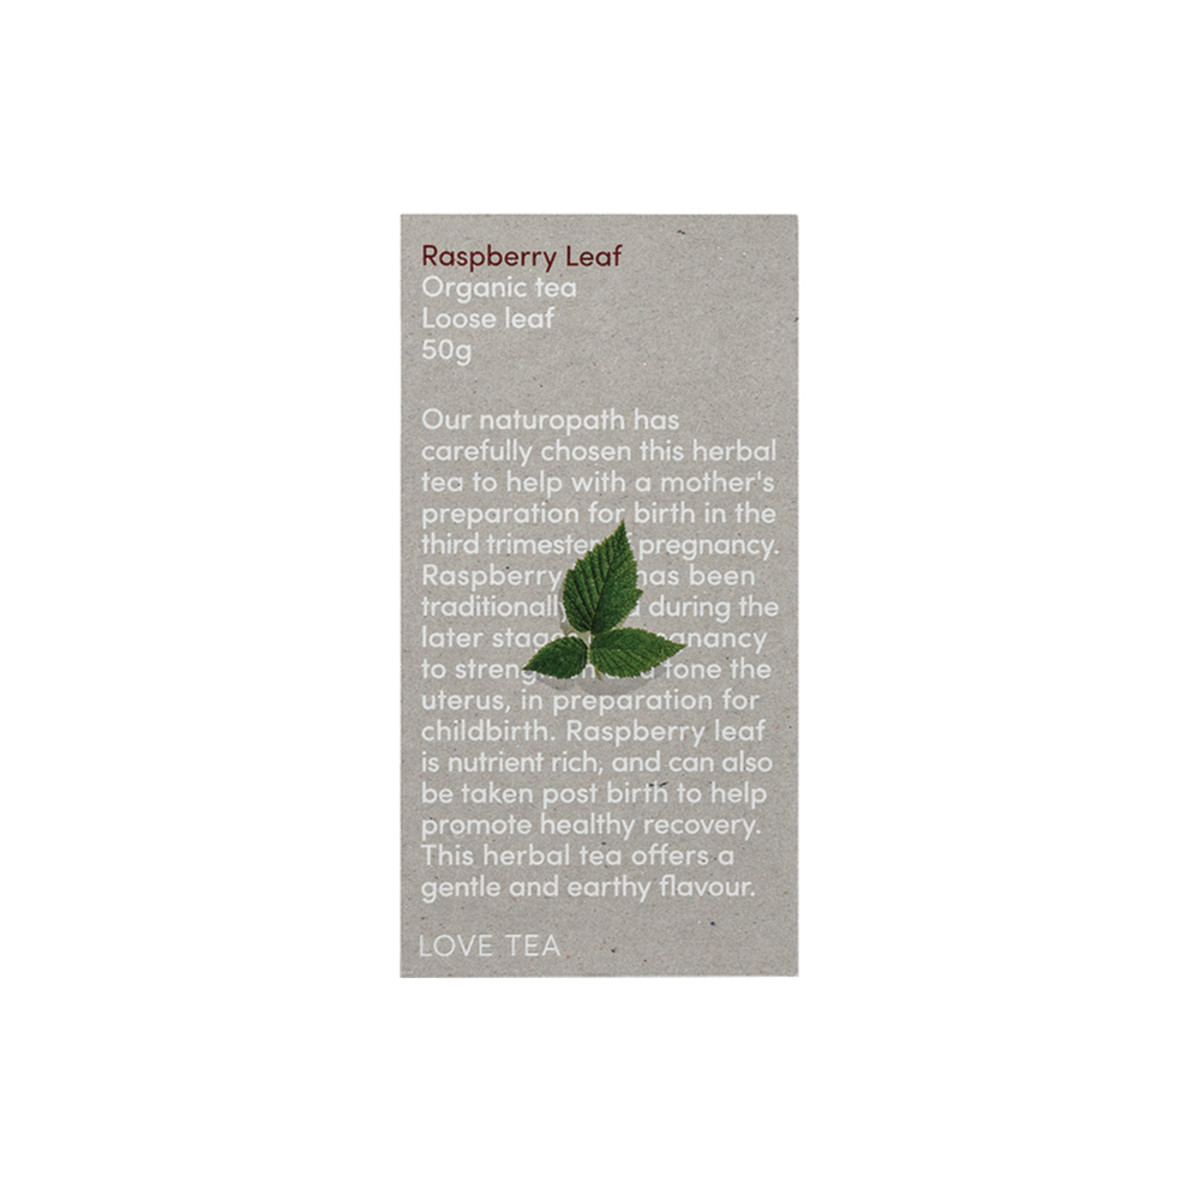 LOVE TEA - Organic Raspberry Leaf Tea Loose